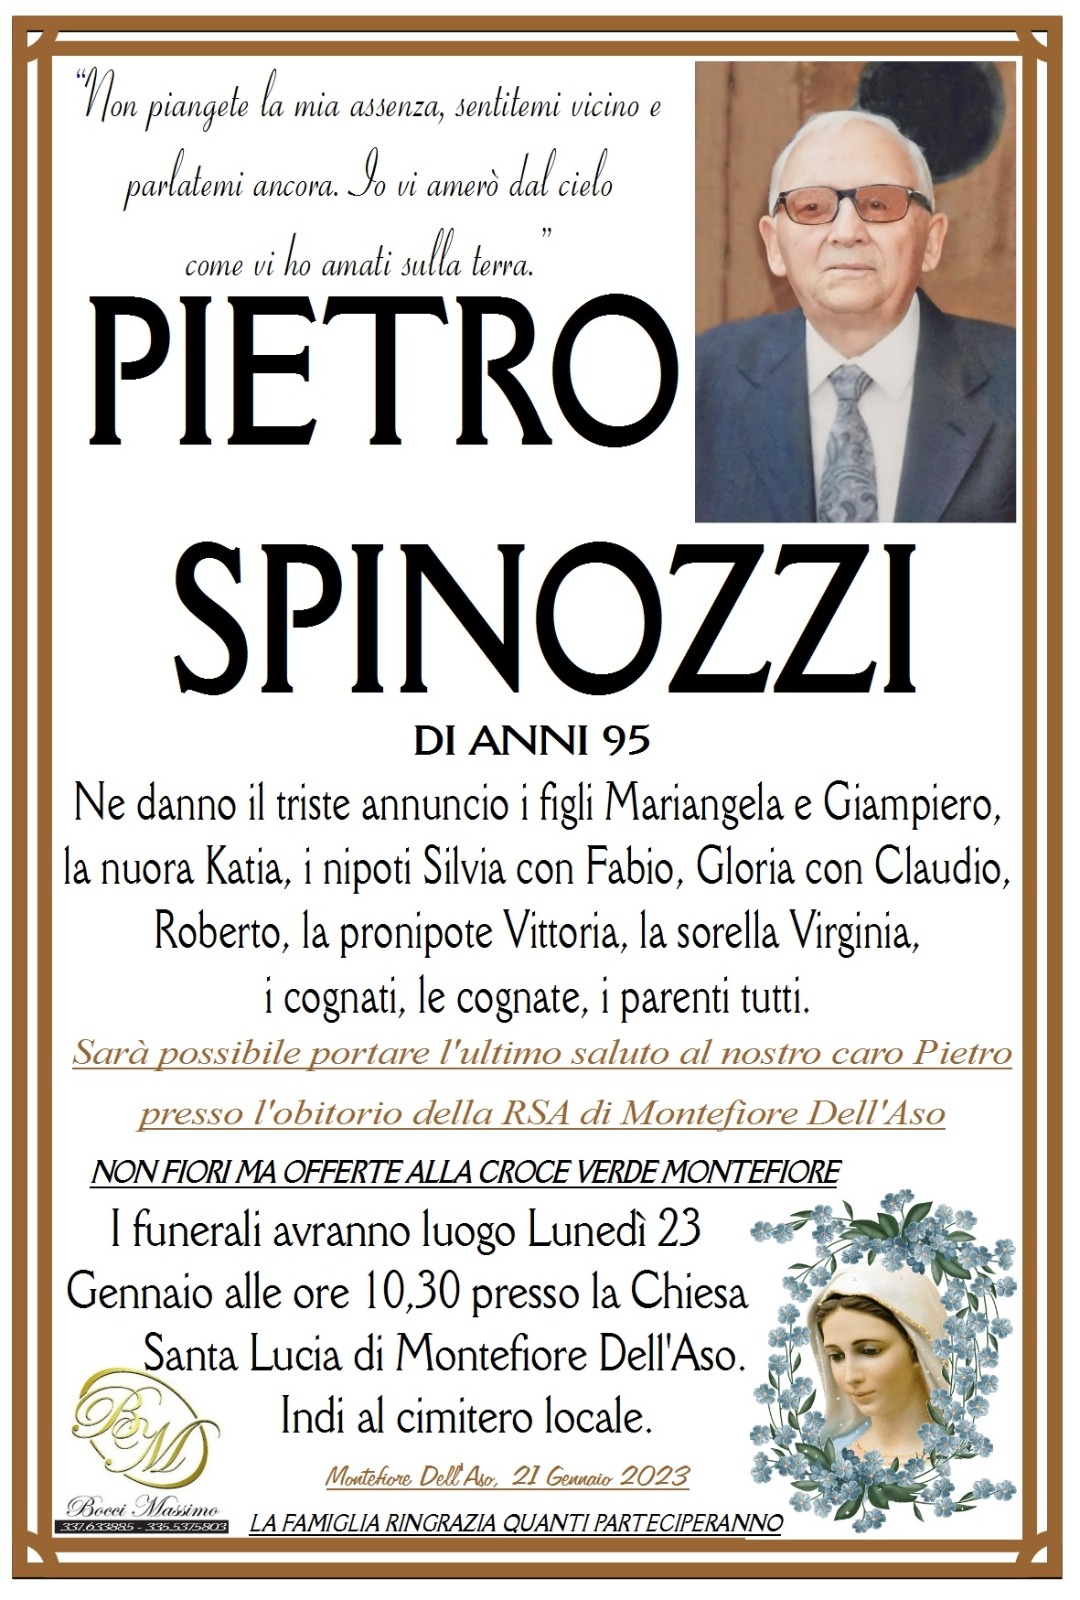 Pietro Spinozzi - Riviera Oggi